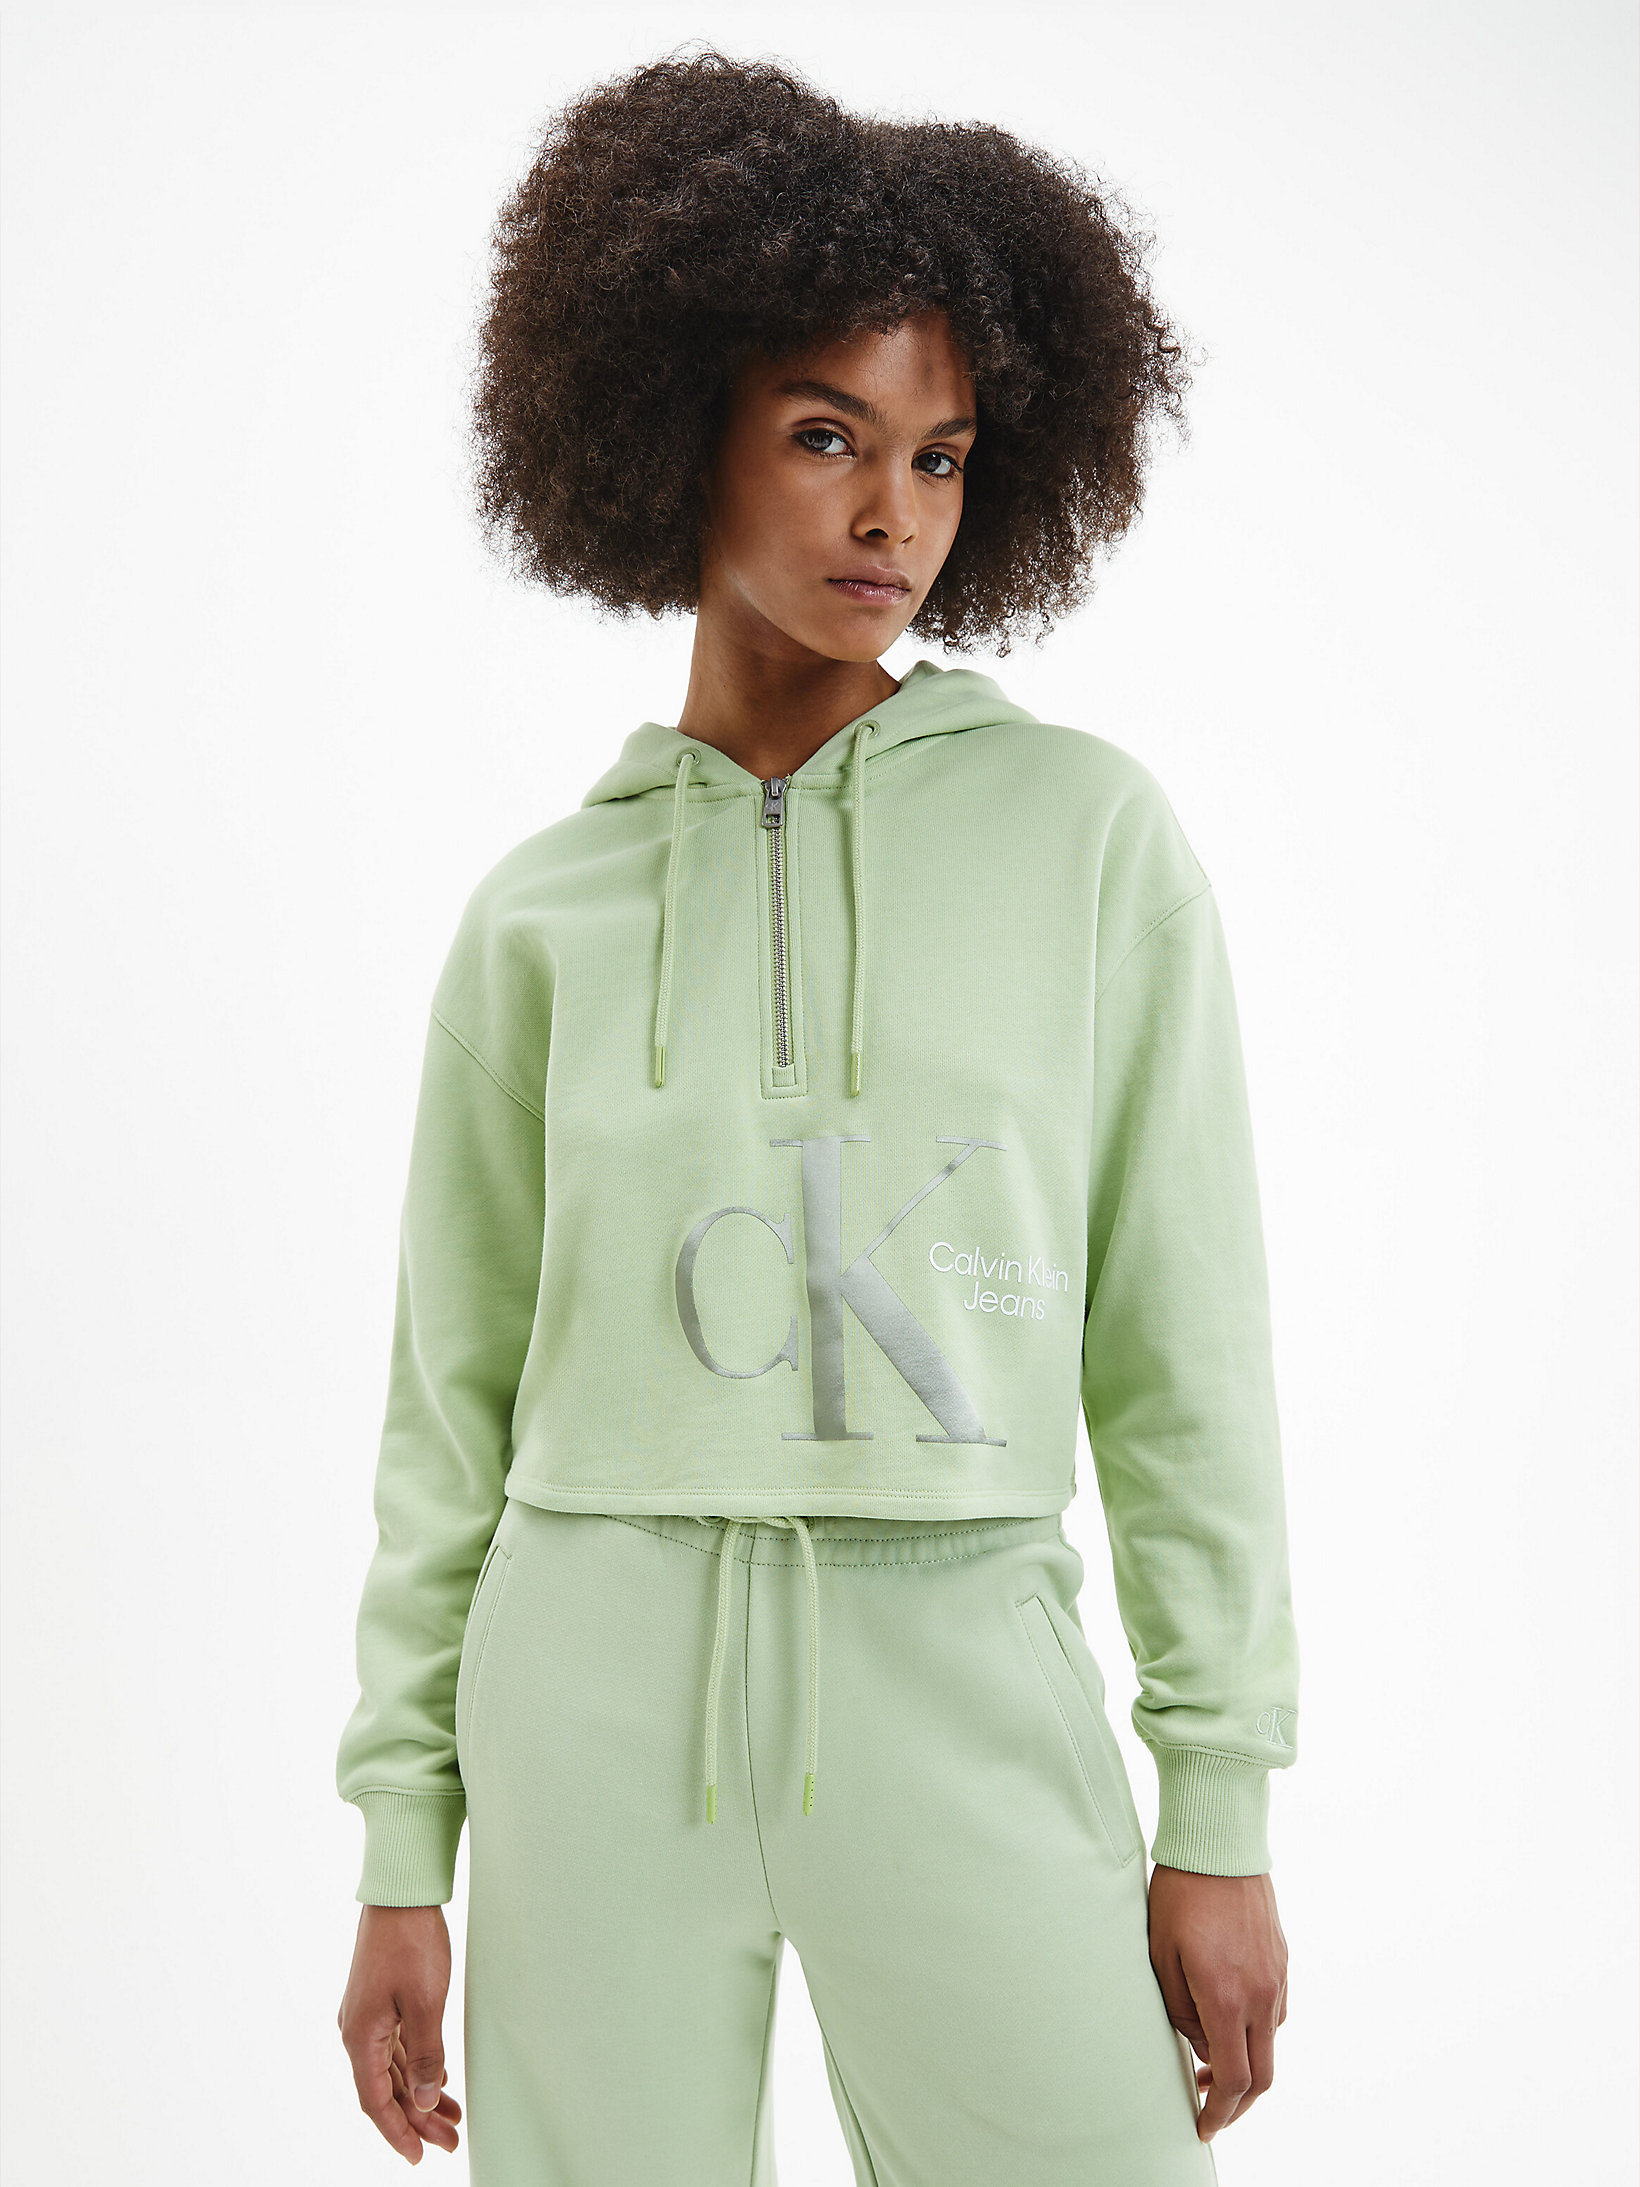 Jaded Green Lässiger Hoodie Mit Kragenreißverschluss undefined Damen Calvin Klein